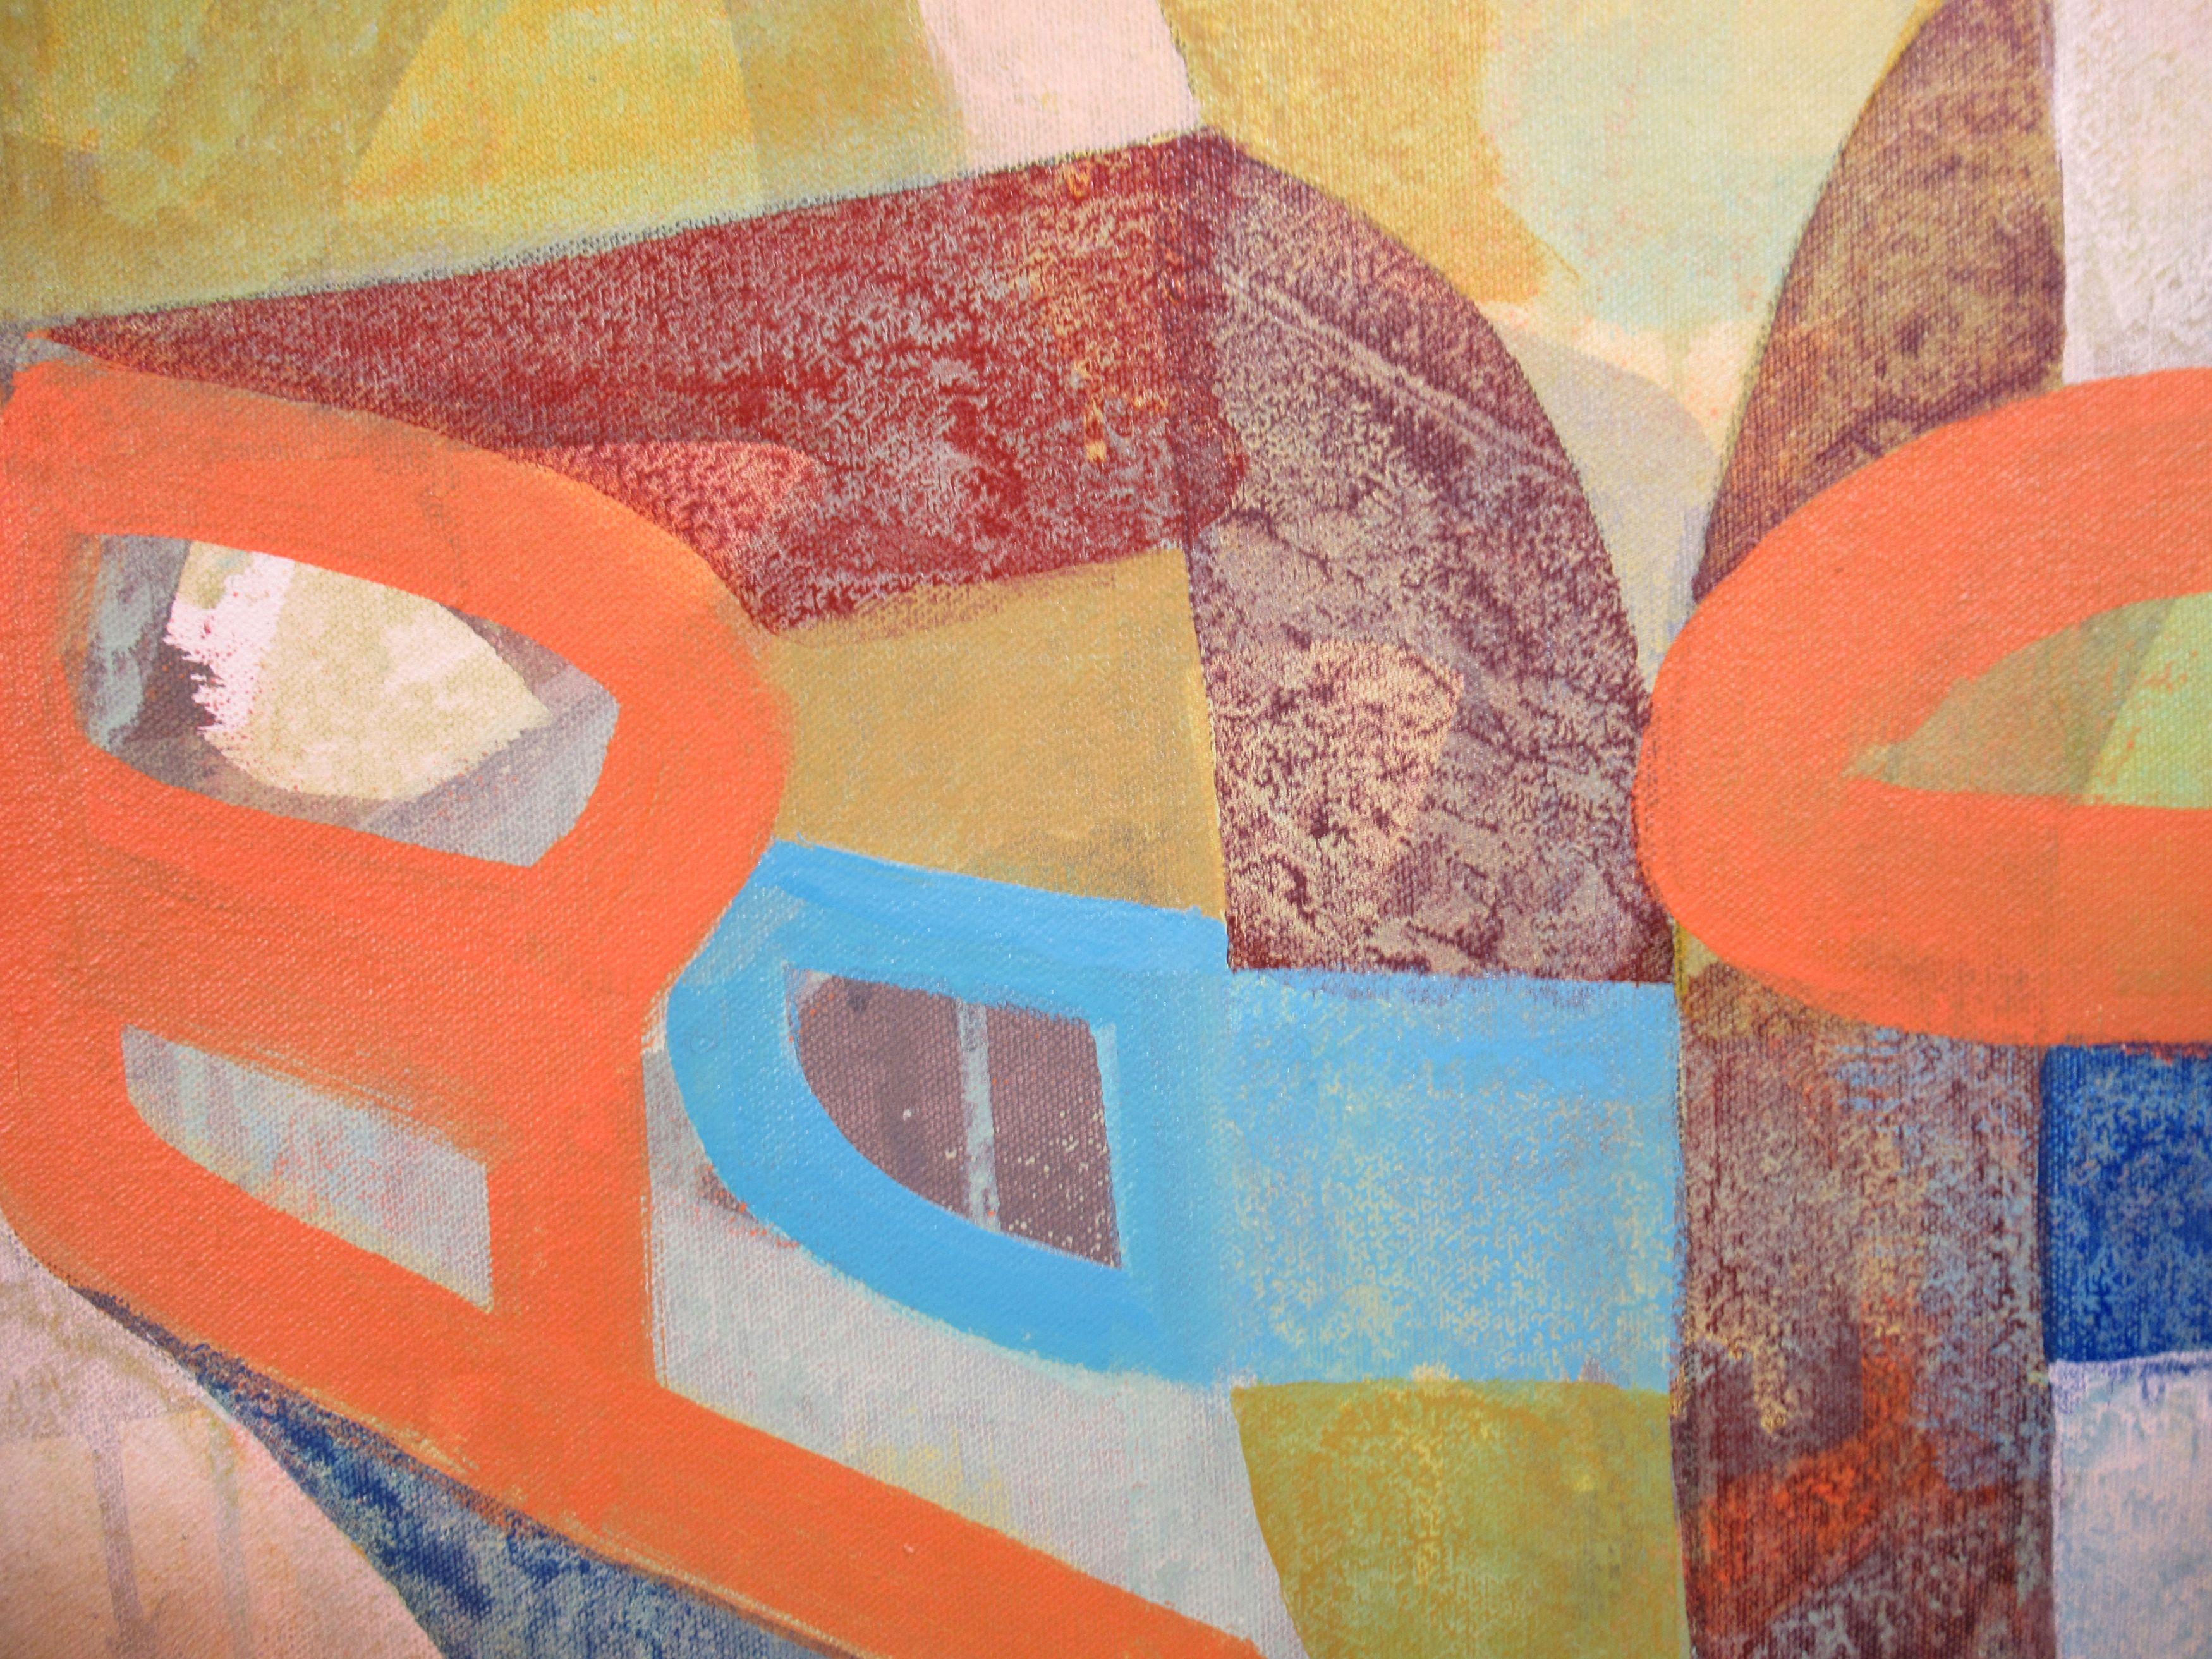 Une composition structurelle colorée d'oranges, de bleus, de bruns et de blancs cassés. Cette peinture combine des marques calligraphiques orange audacieuses avec des zones de texture superposées. Peint à  : : Peinture : : Abstrait : : Cette pièce